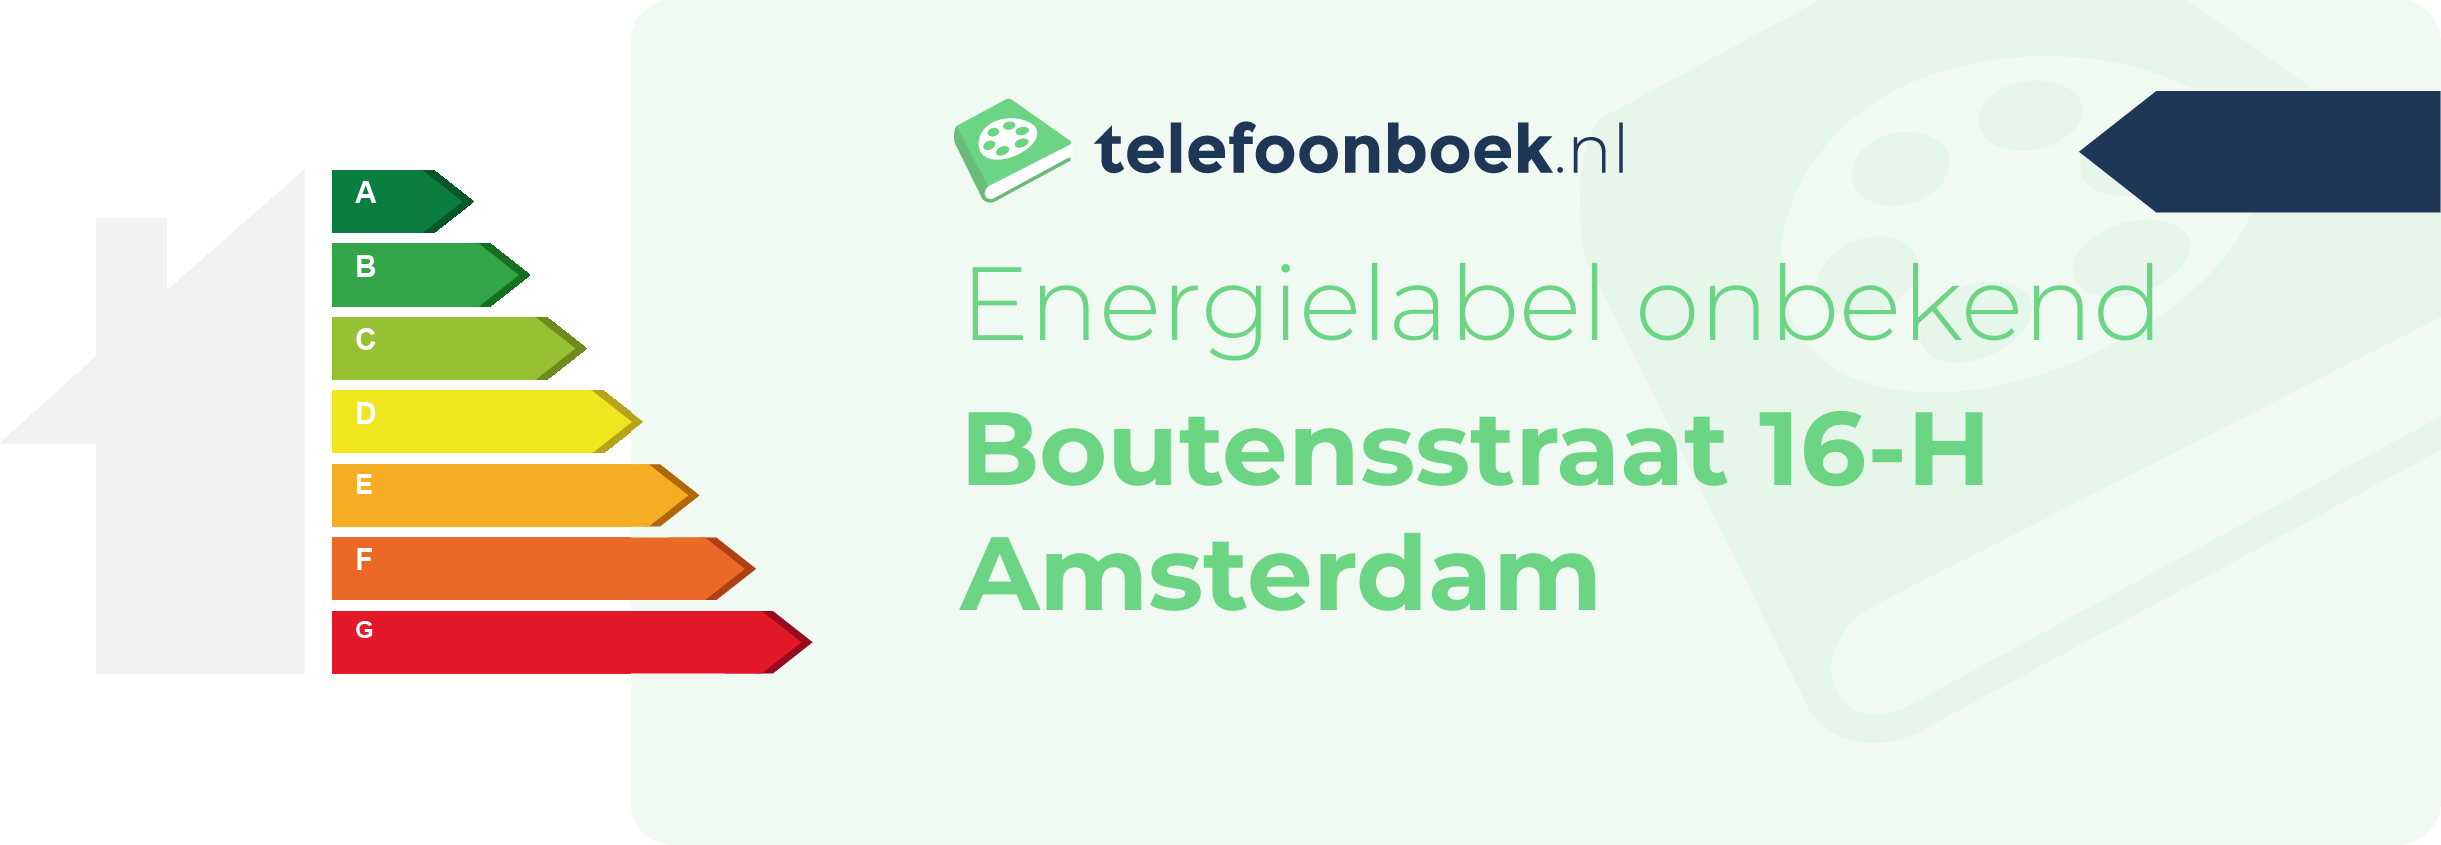 Energielabel Boutensstraat 16-H Amsterdam